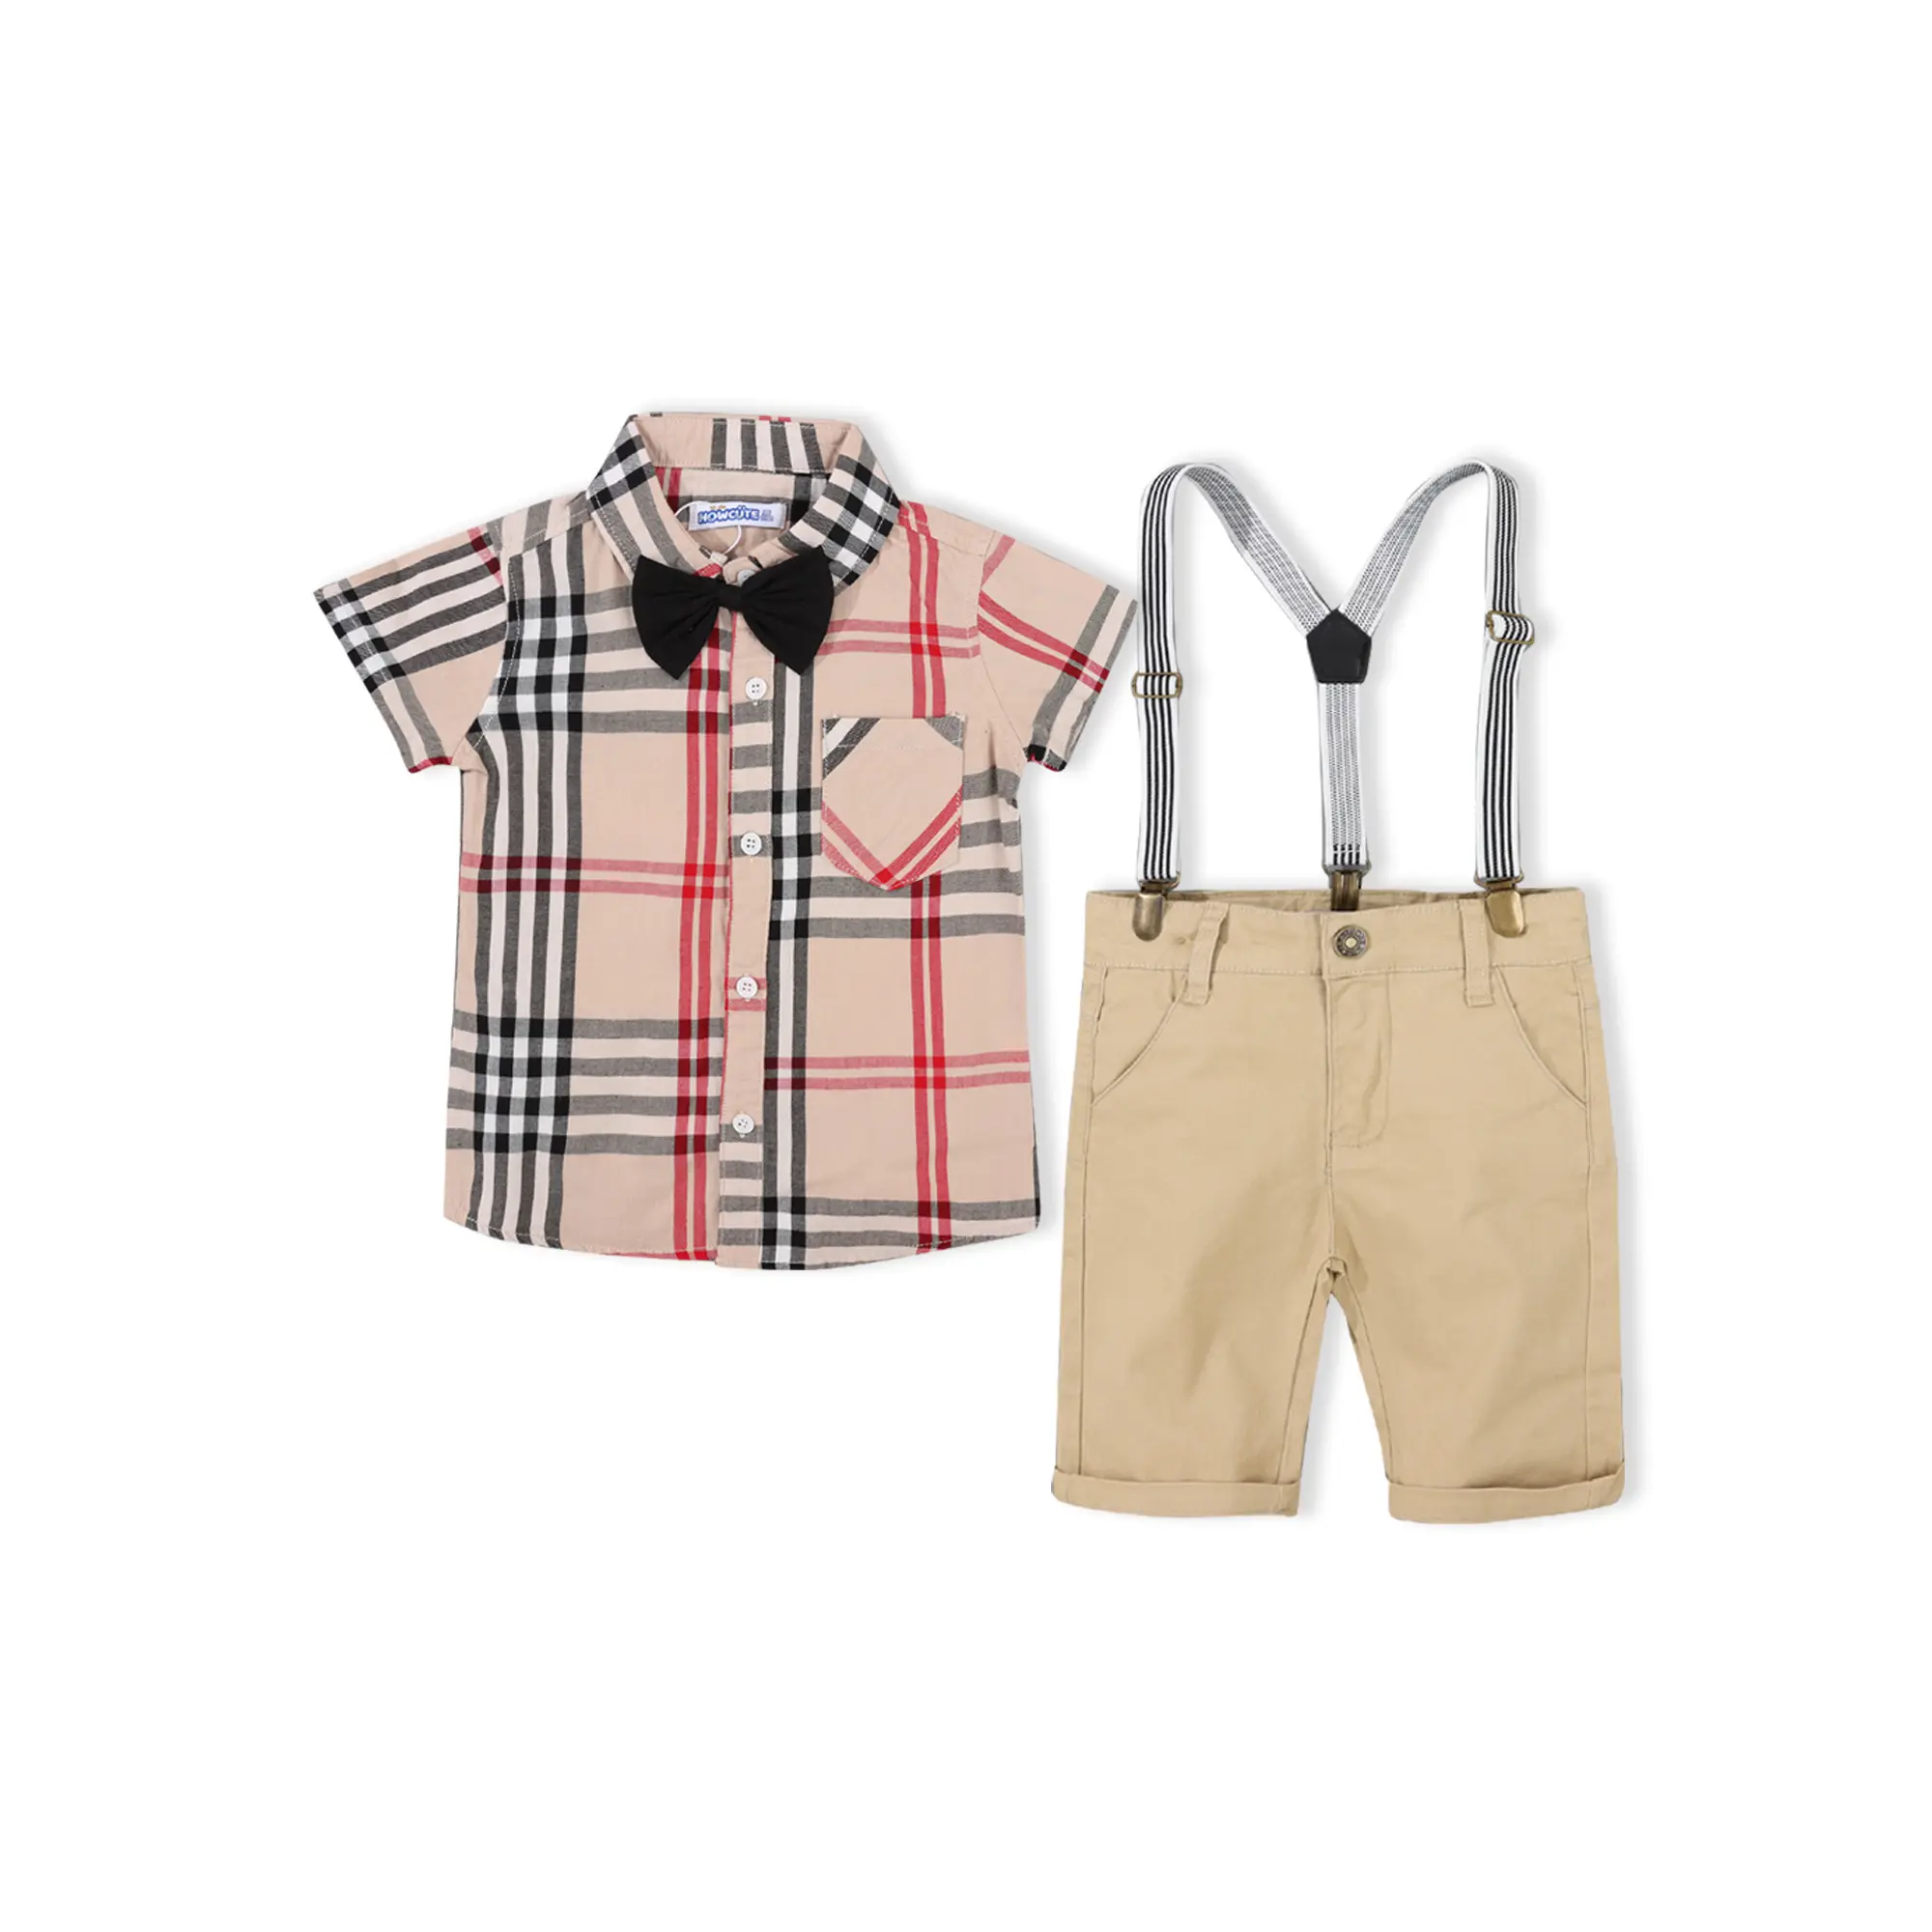 Conjunto de roupas infantis em duas peças, camisas xadrez e calças formais para crianças